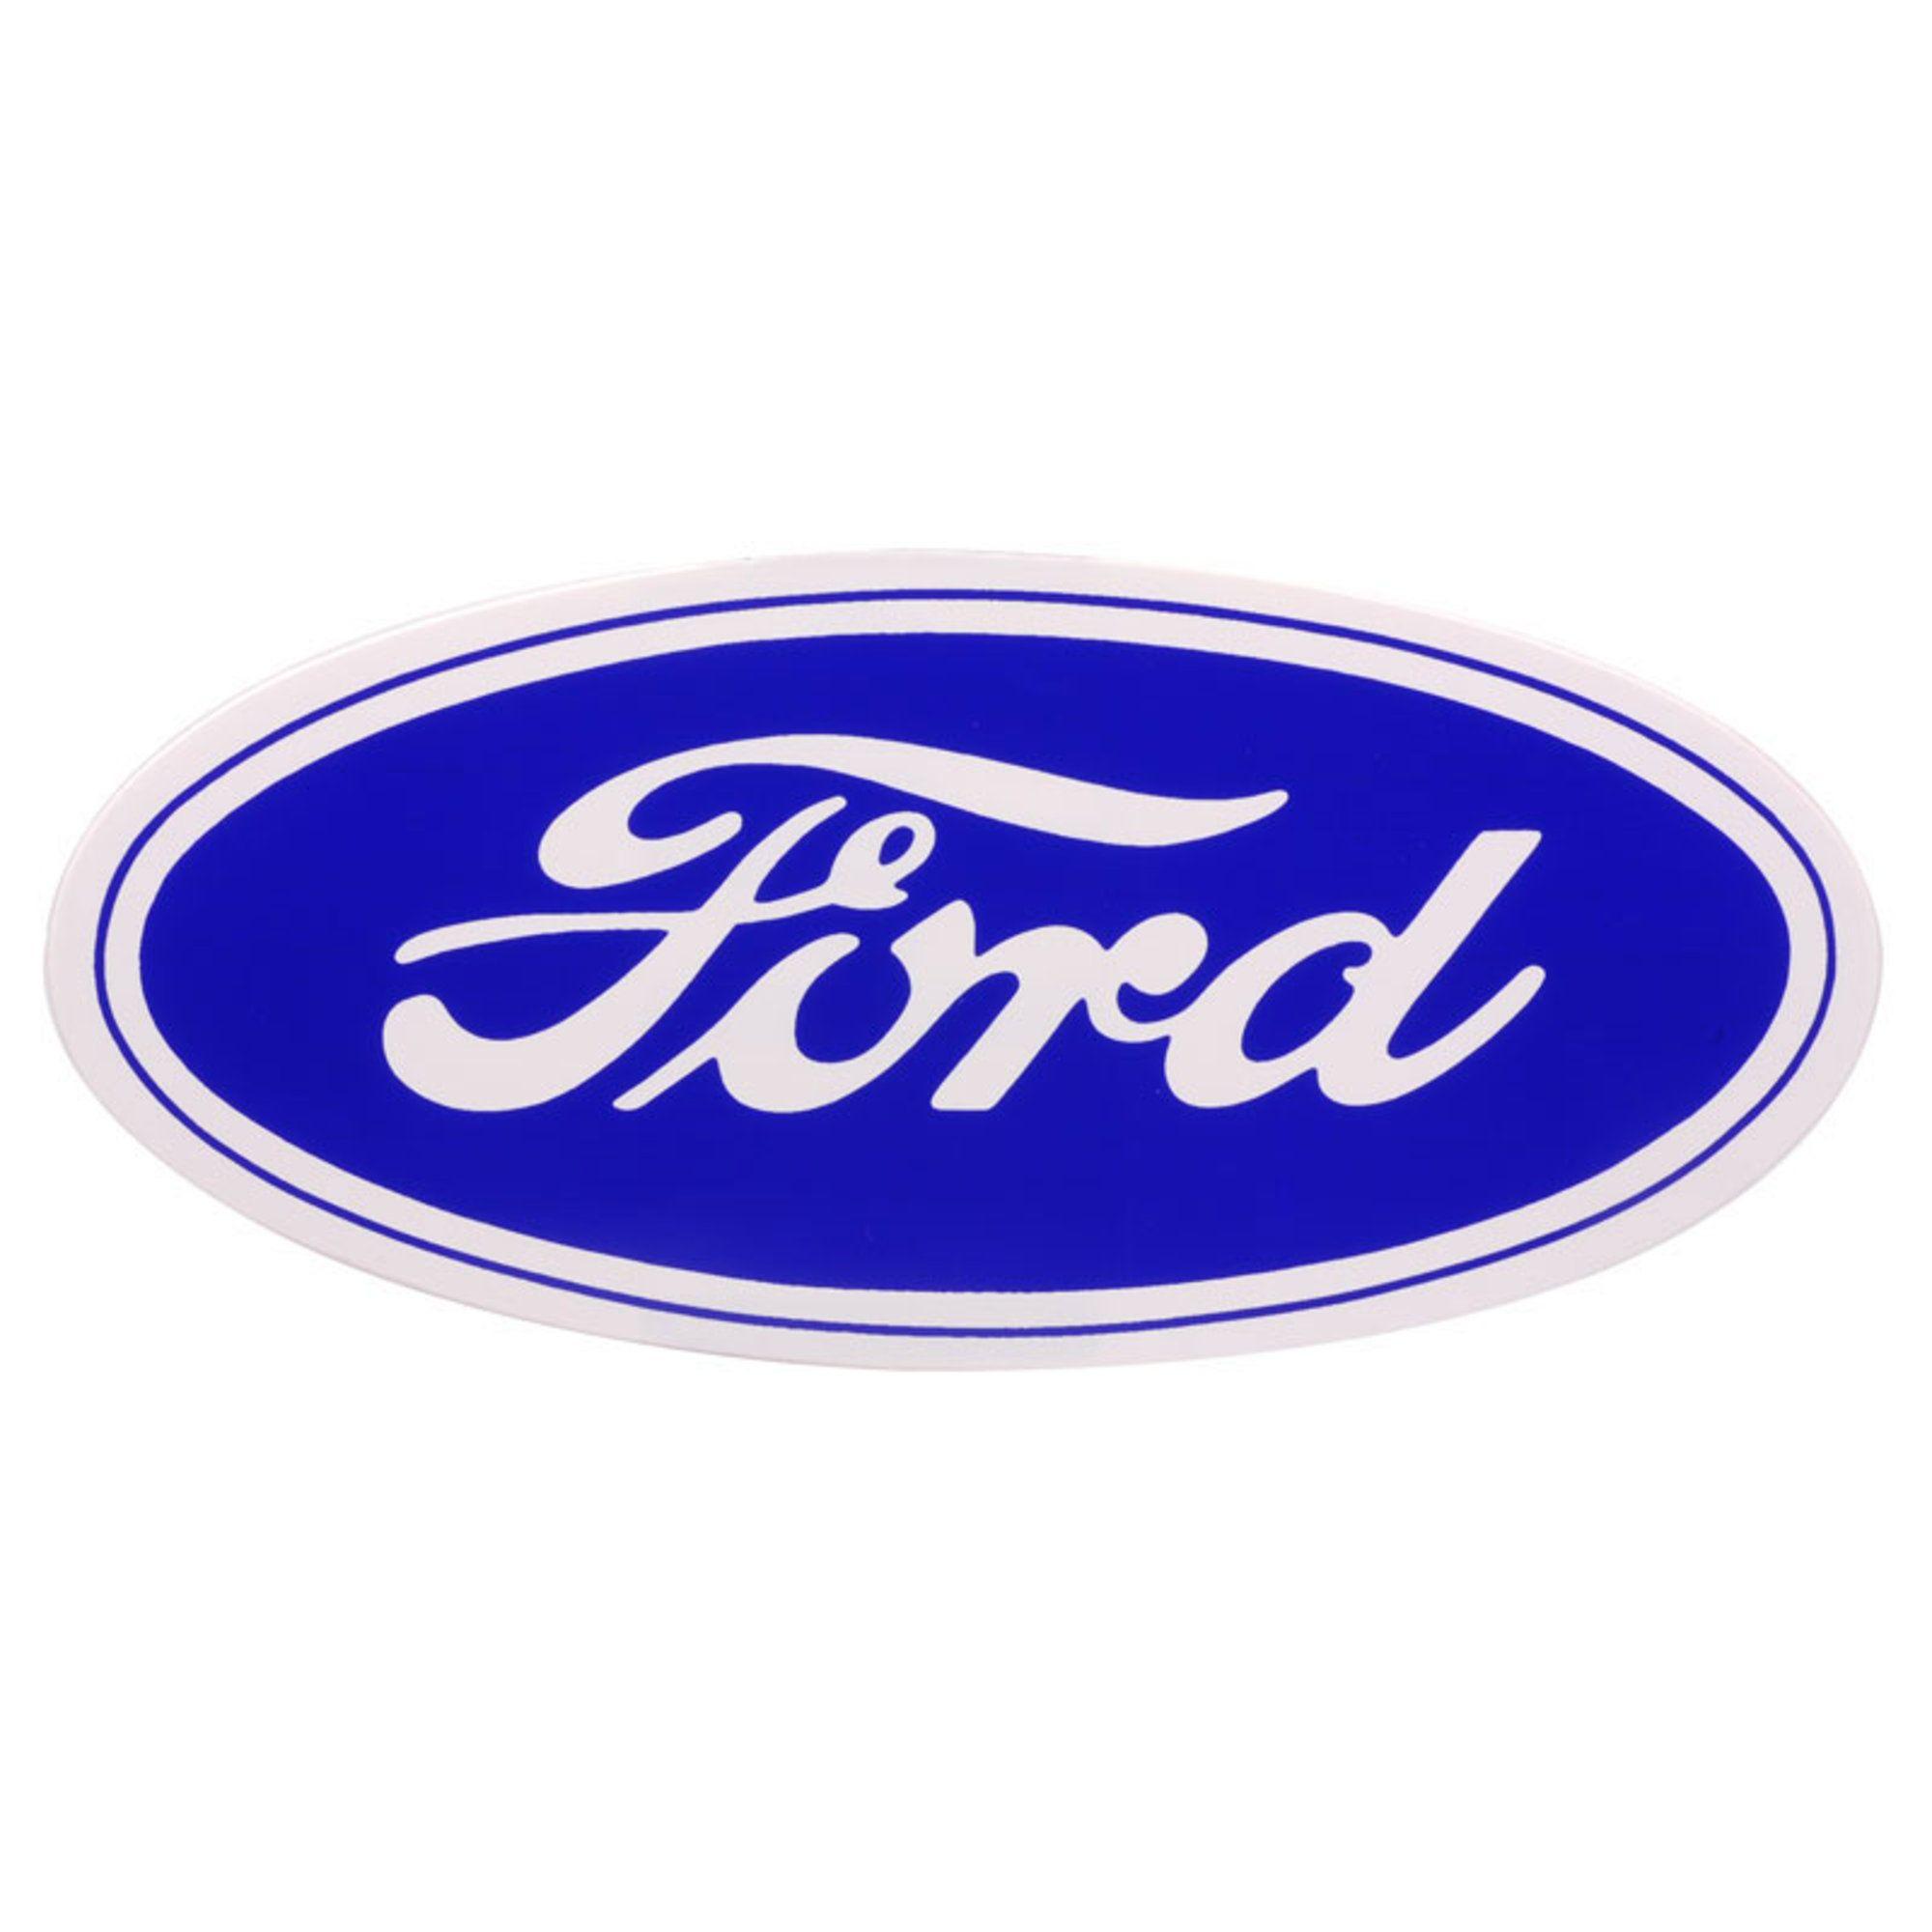 12 Ford Script Sticker on White Background. Dennis